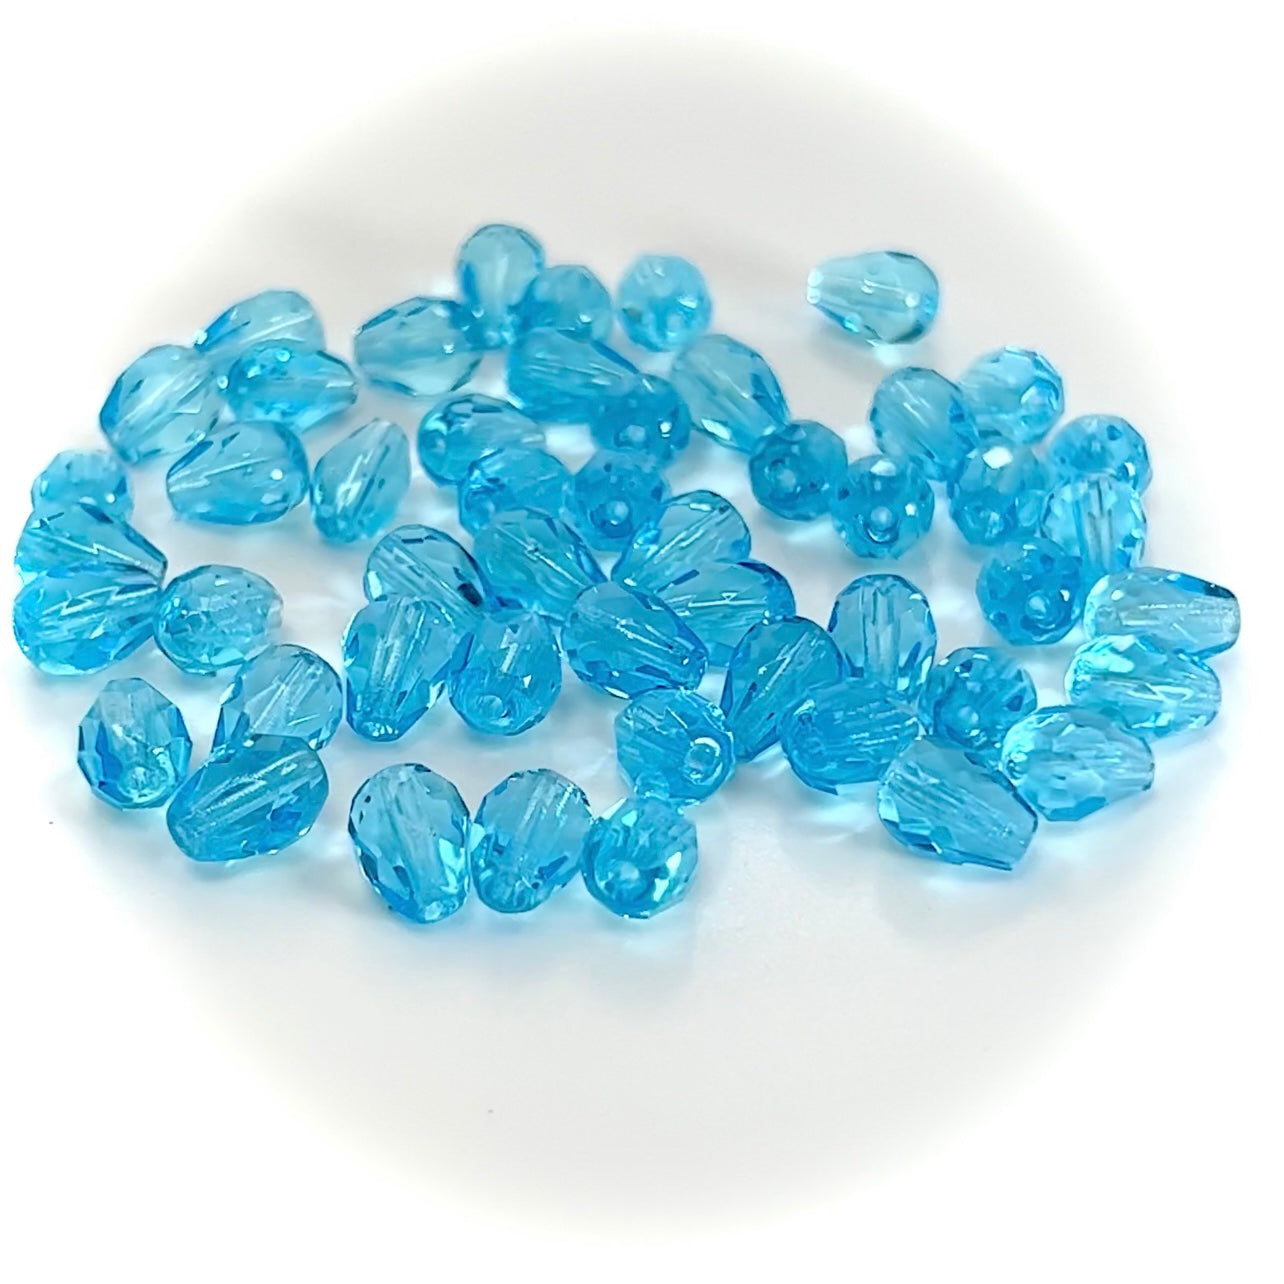 Czech Glass Pear Shaped Fire Polished Beads 7x5mm Aqua blue Tear Drops, 50 pieces, J031